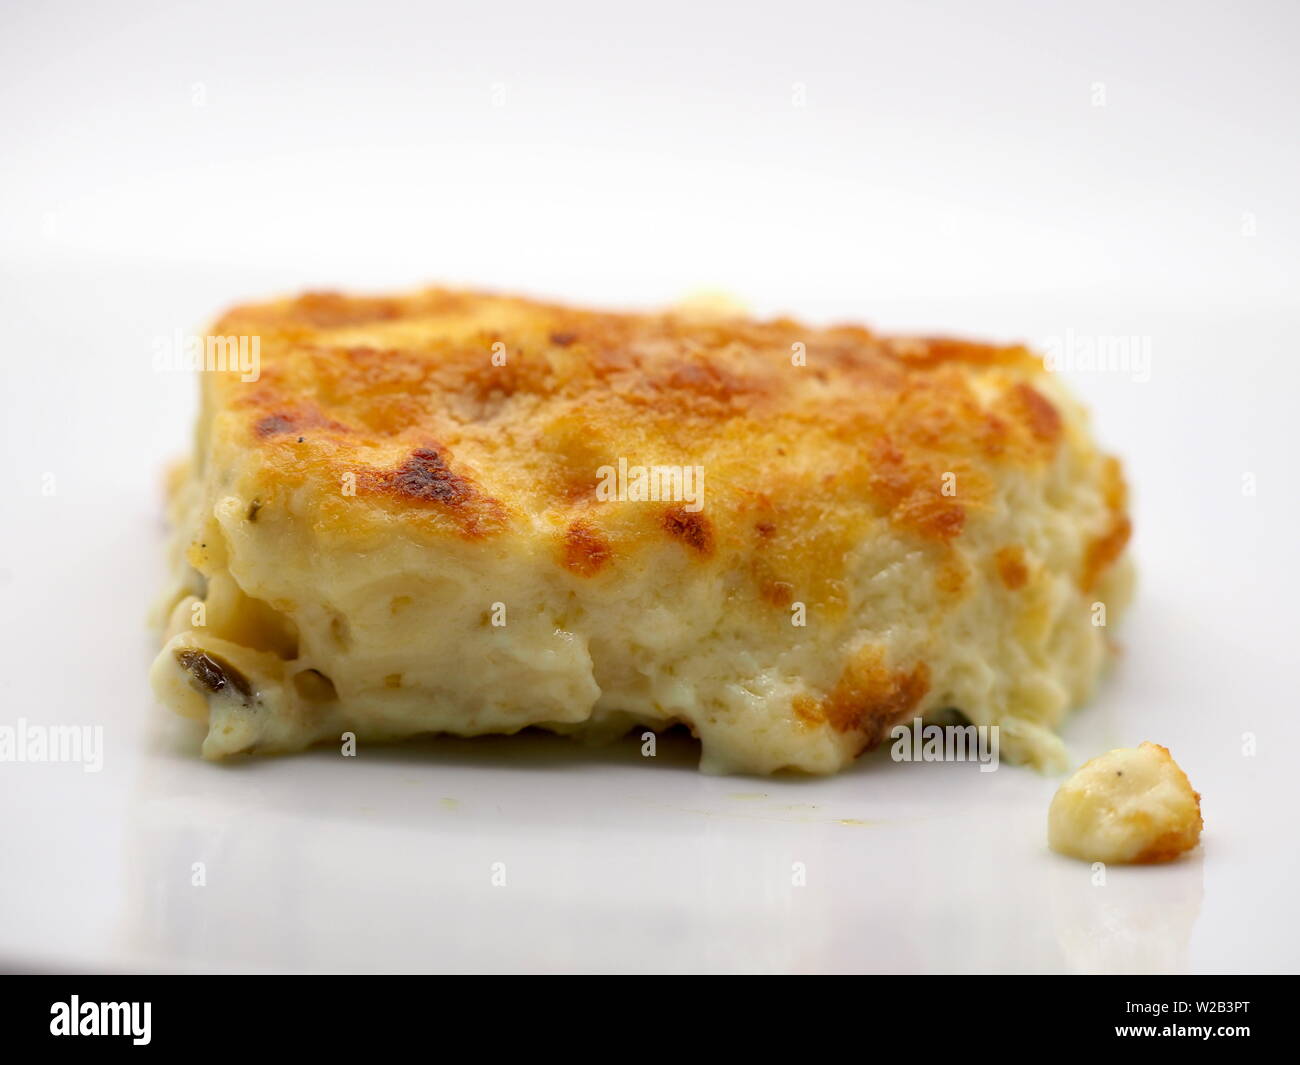 Londres, UK - Juillet 2019 - Plat - une fourchette pleine de macaroni au fromage au four avec des pâtes et une miette de fromage Jalapenos Pour Le Dîner Banque D'Images